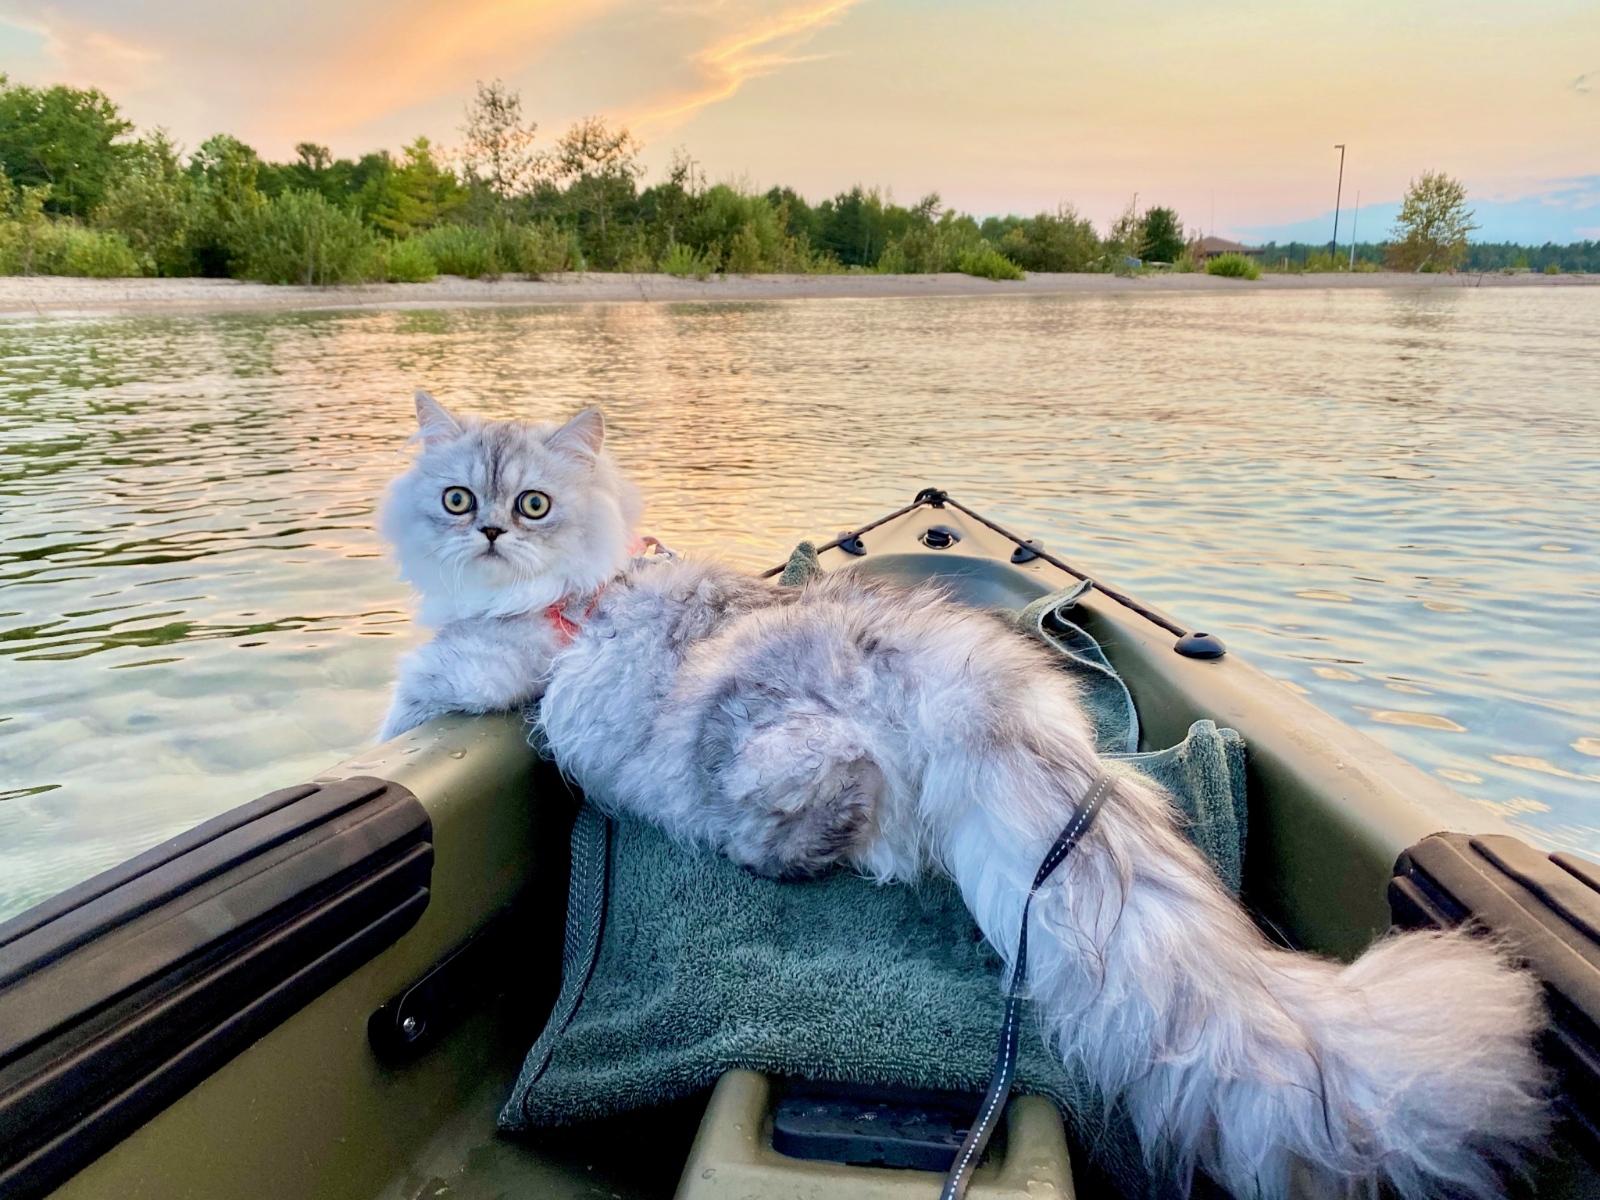 Cat on boat in lake